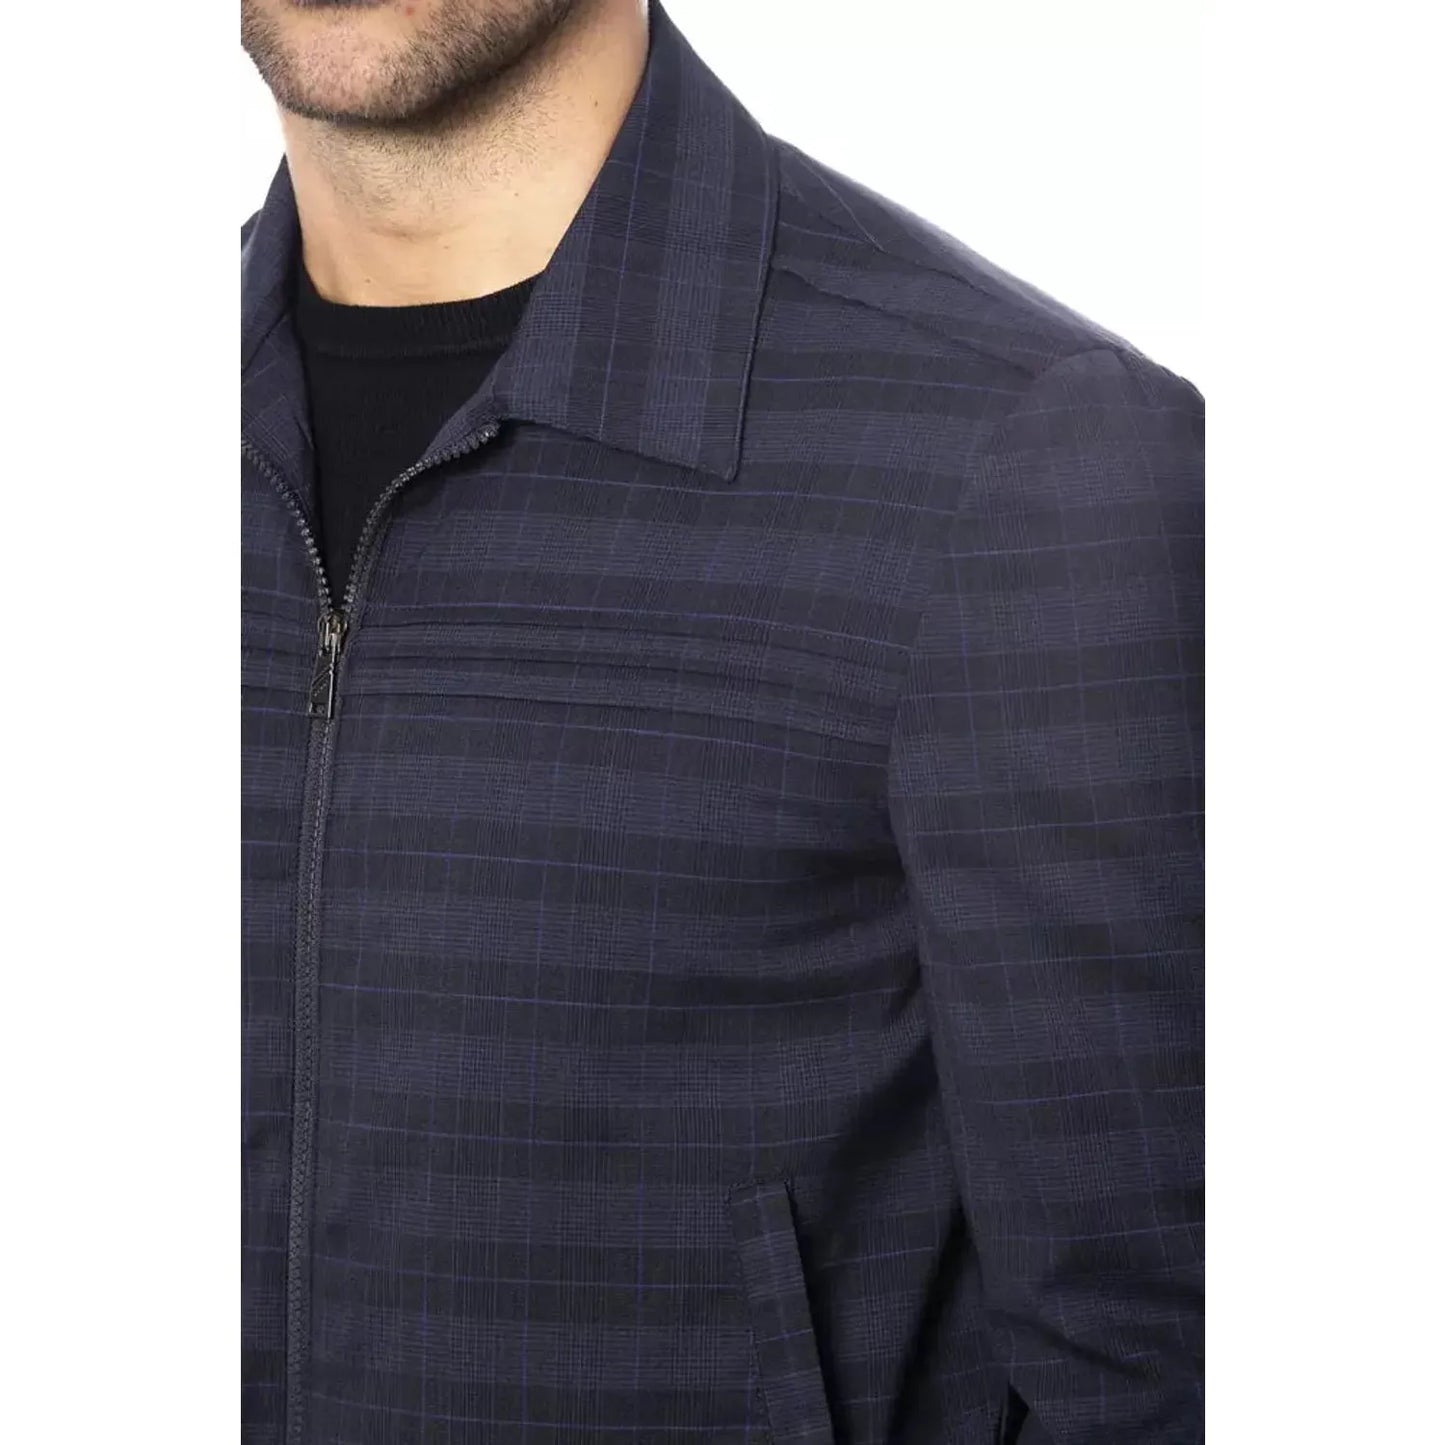 Verri | Blue Wool Jacket | McRichard Designer Brands